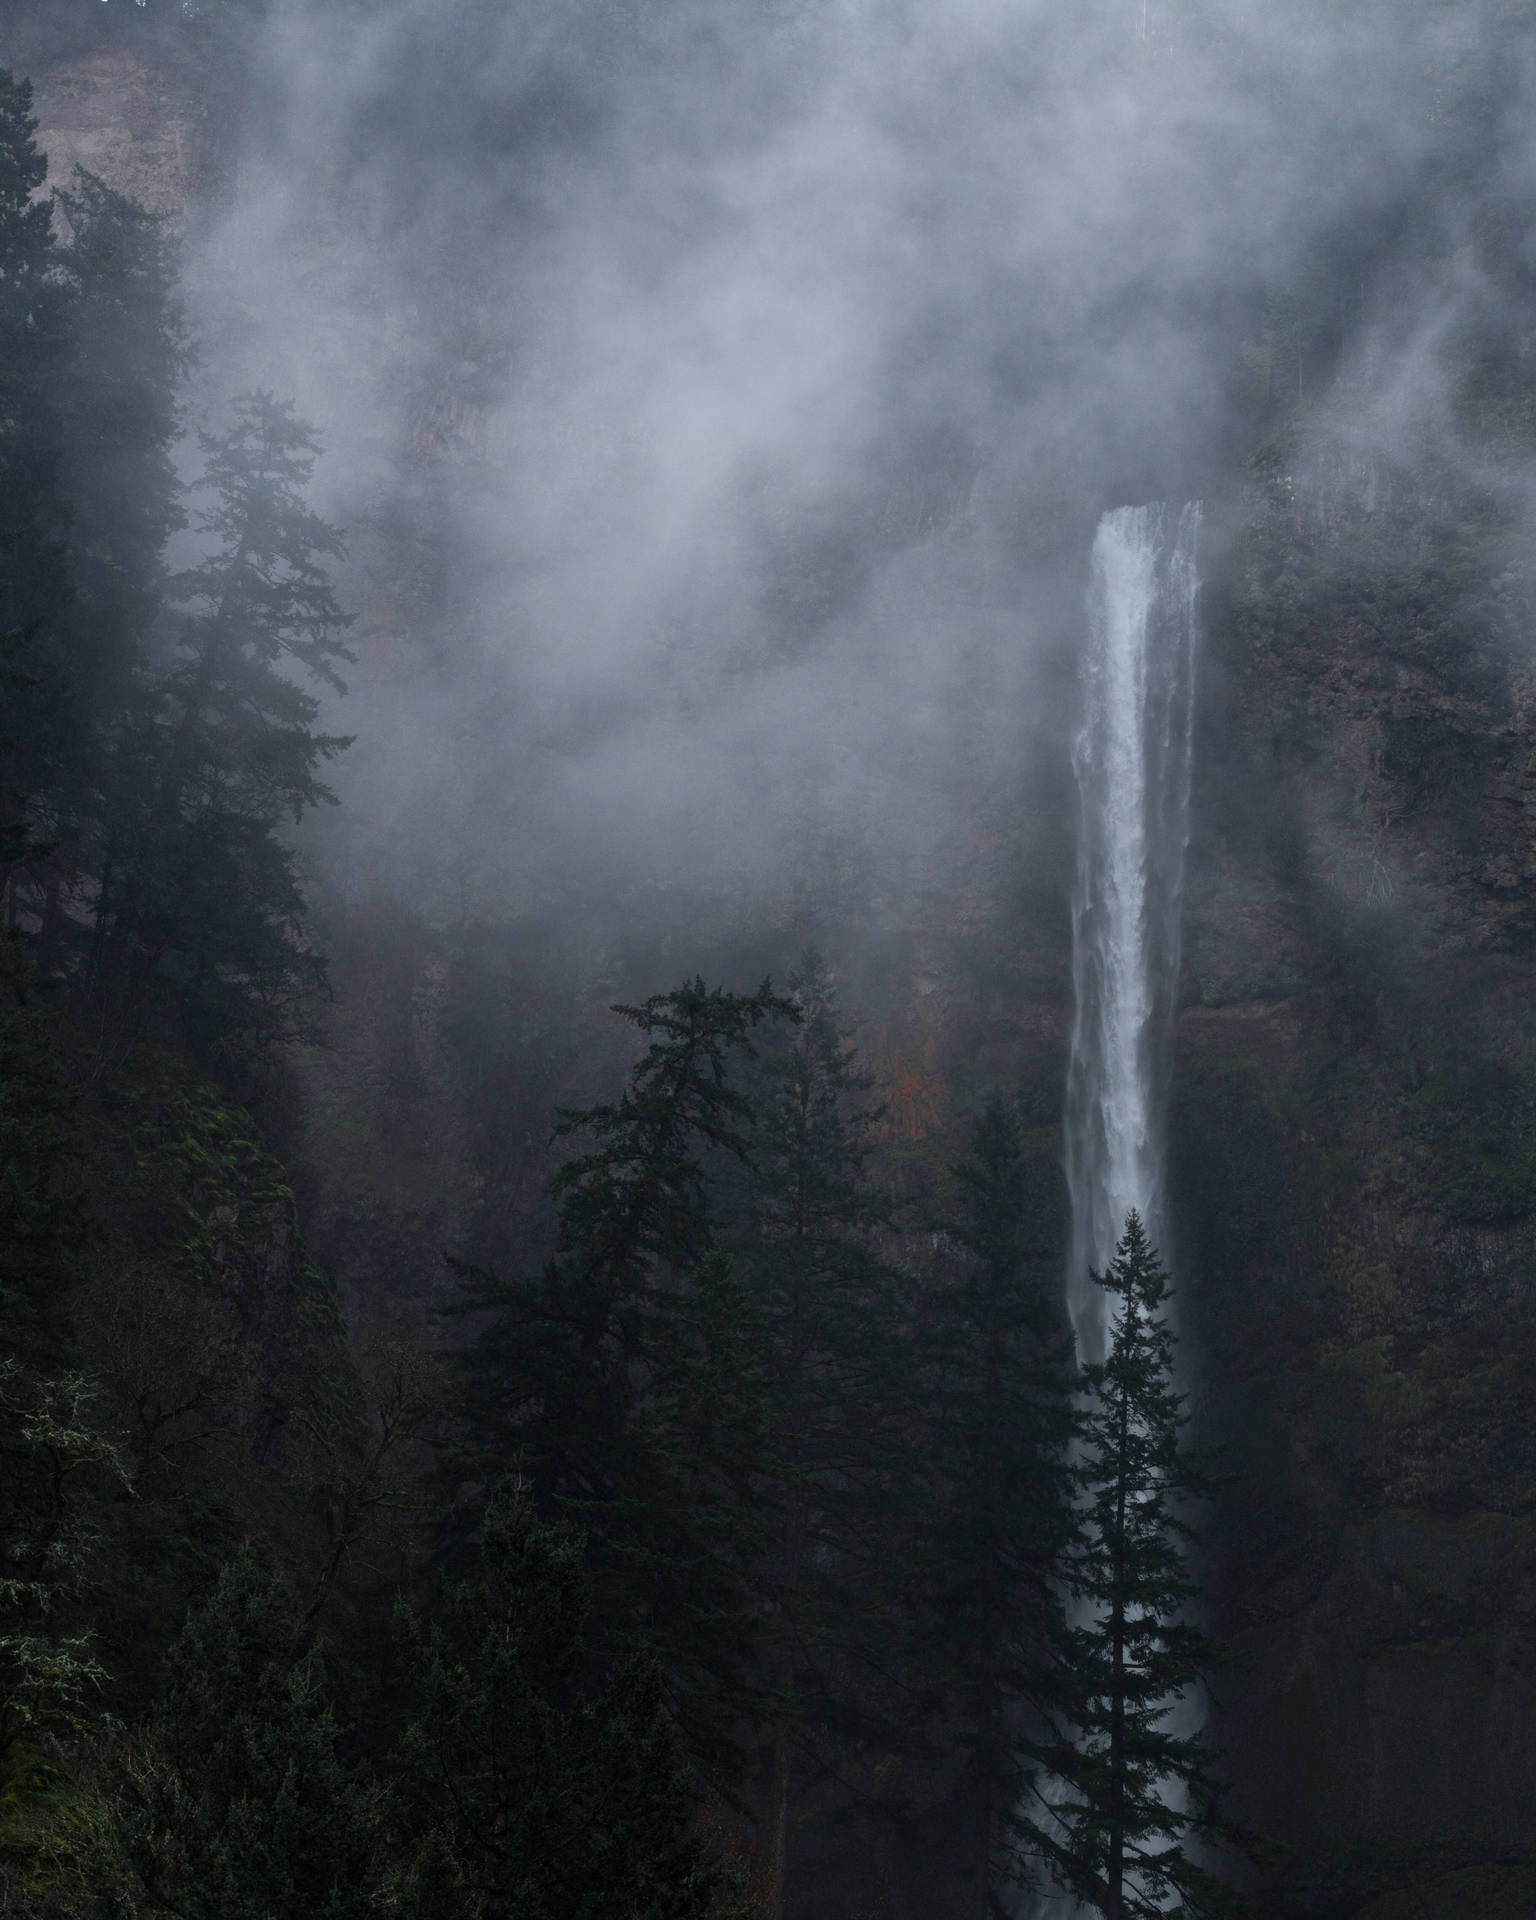 Waterfall In Foggy iPhone Landscape Wallpaper